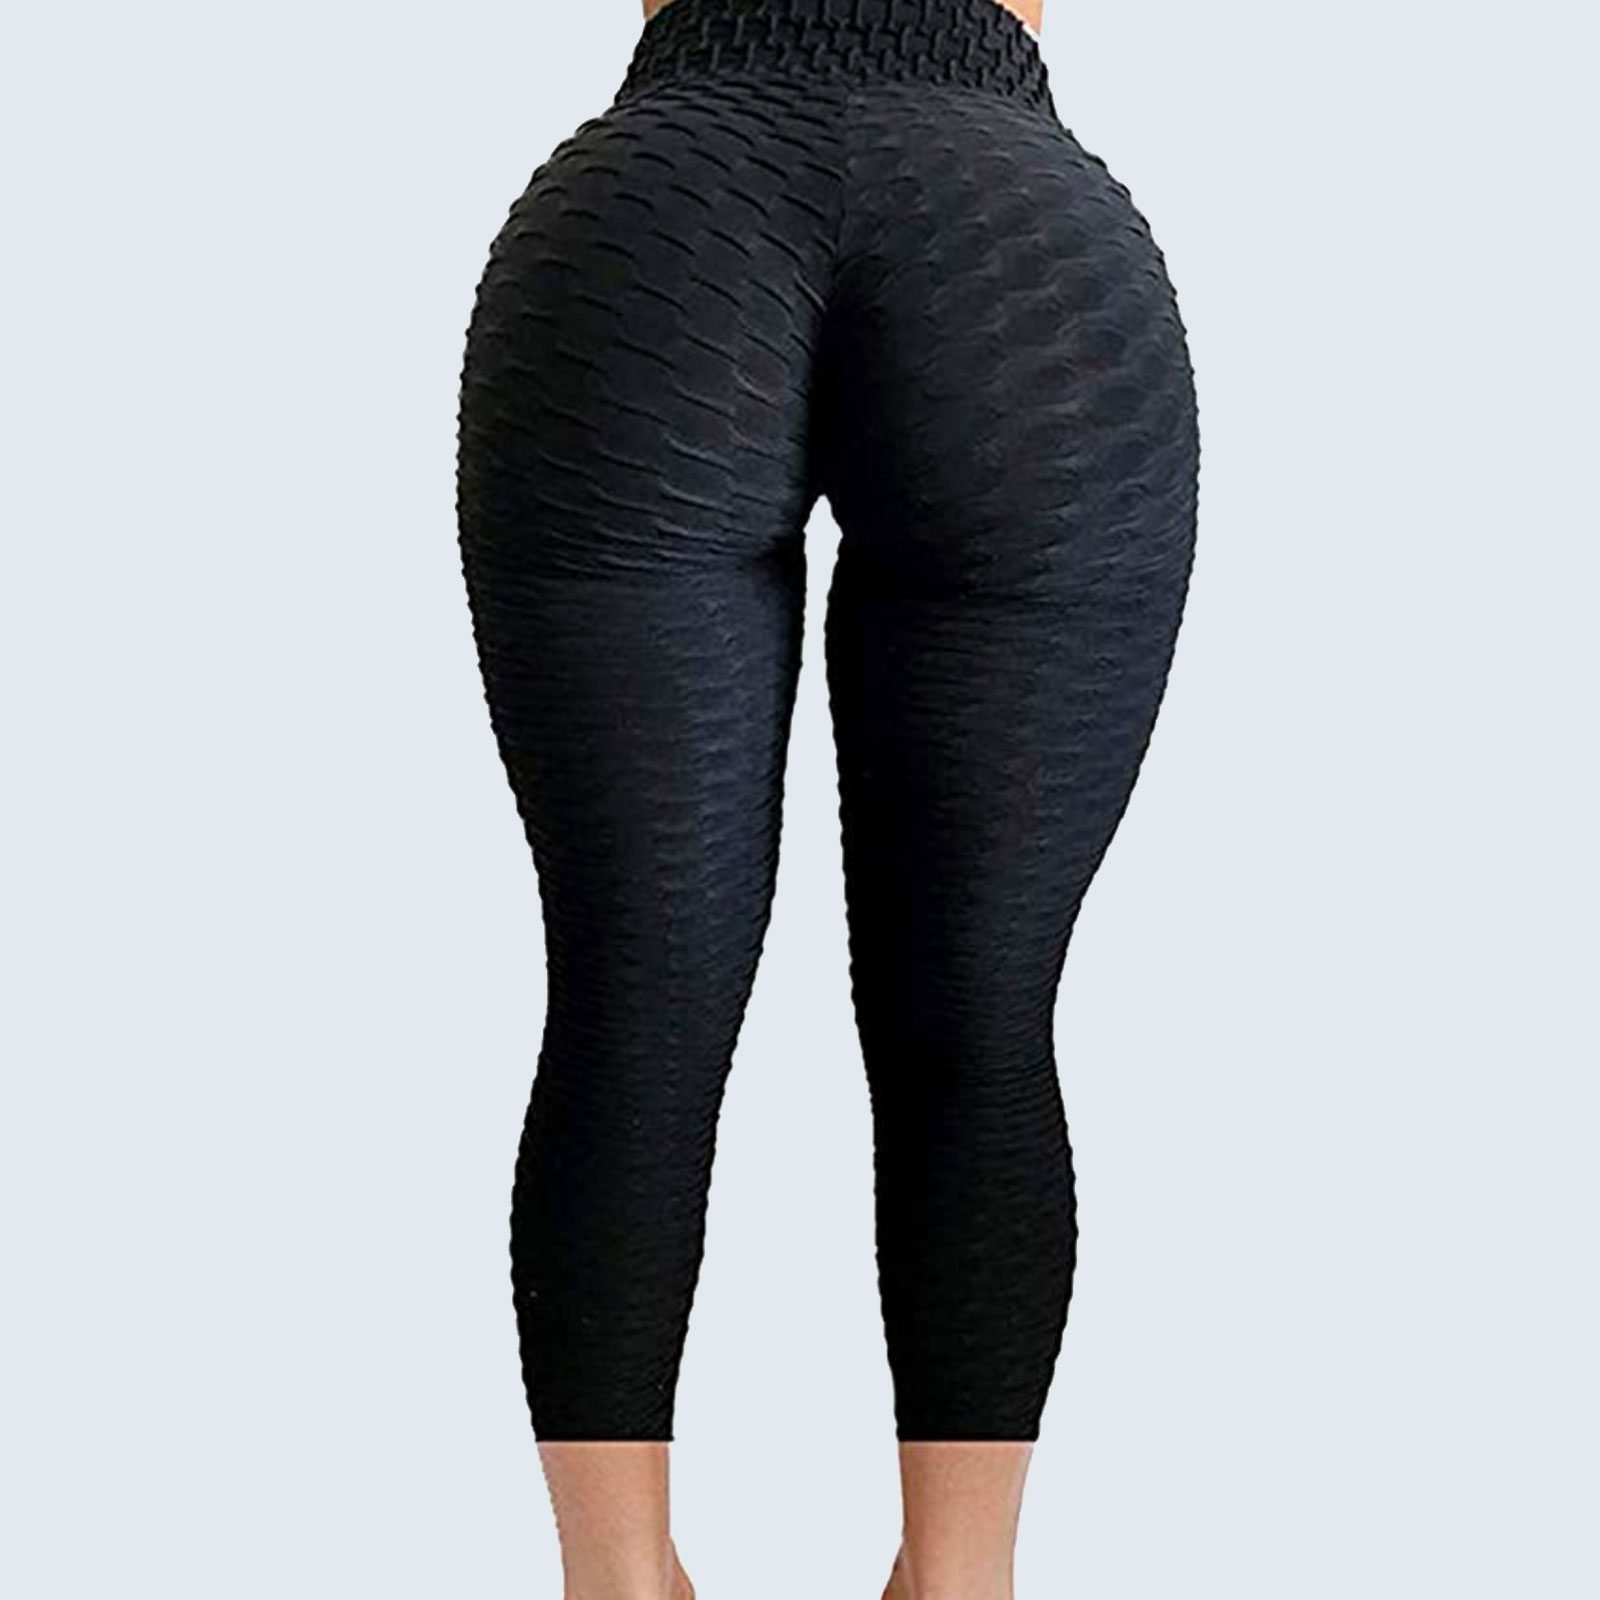 Yoga Pants Nice Ass